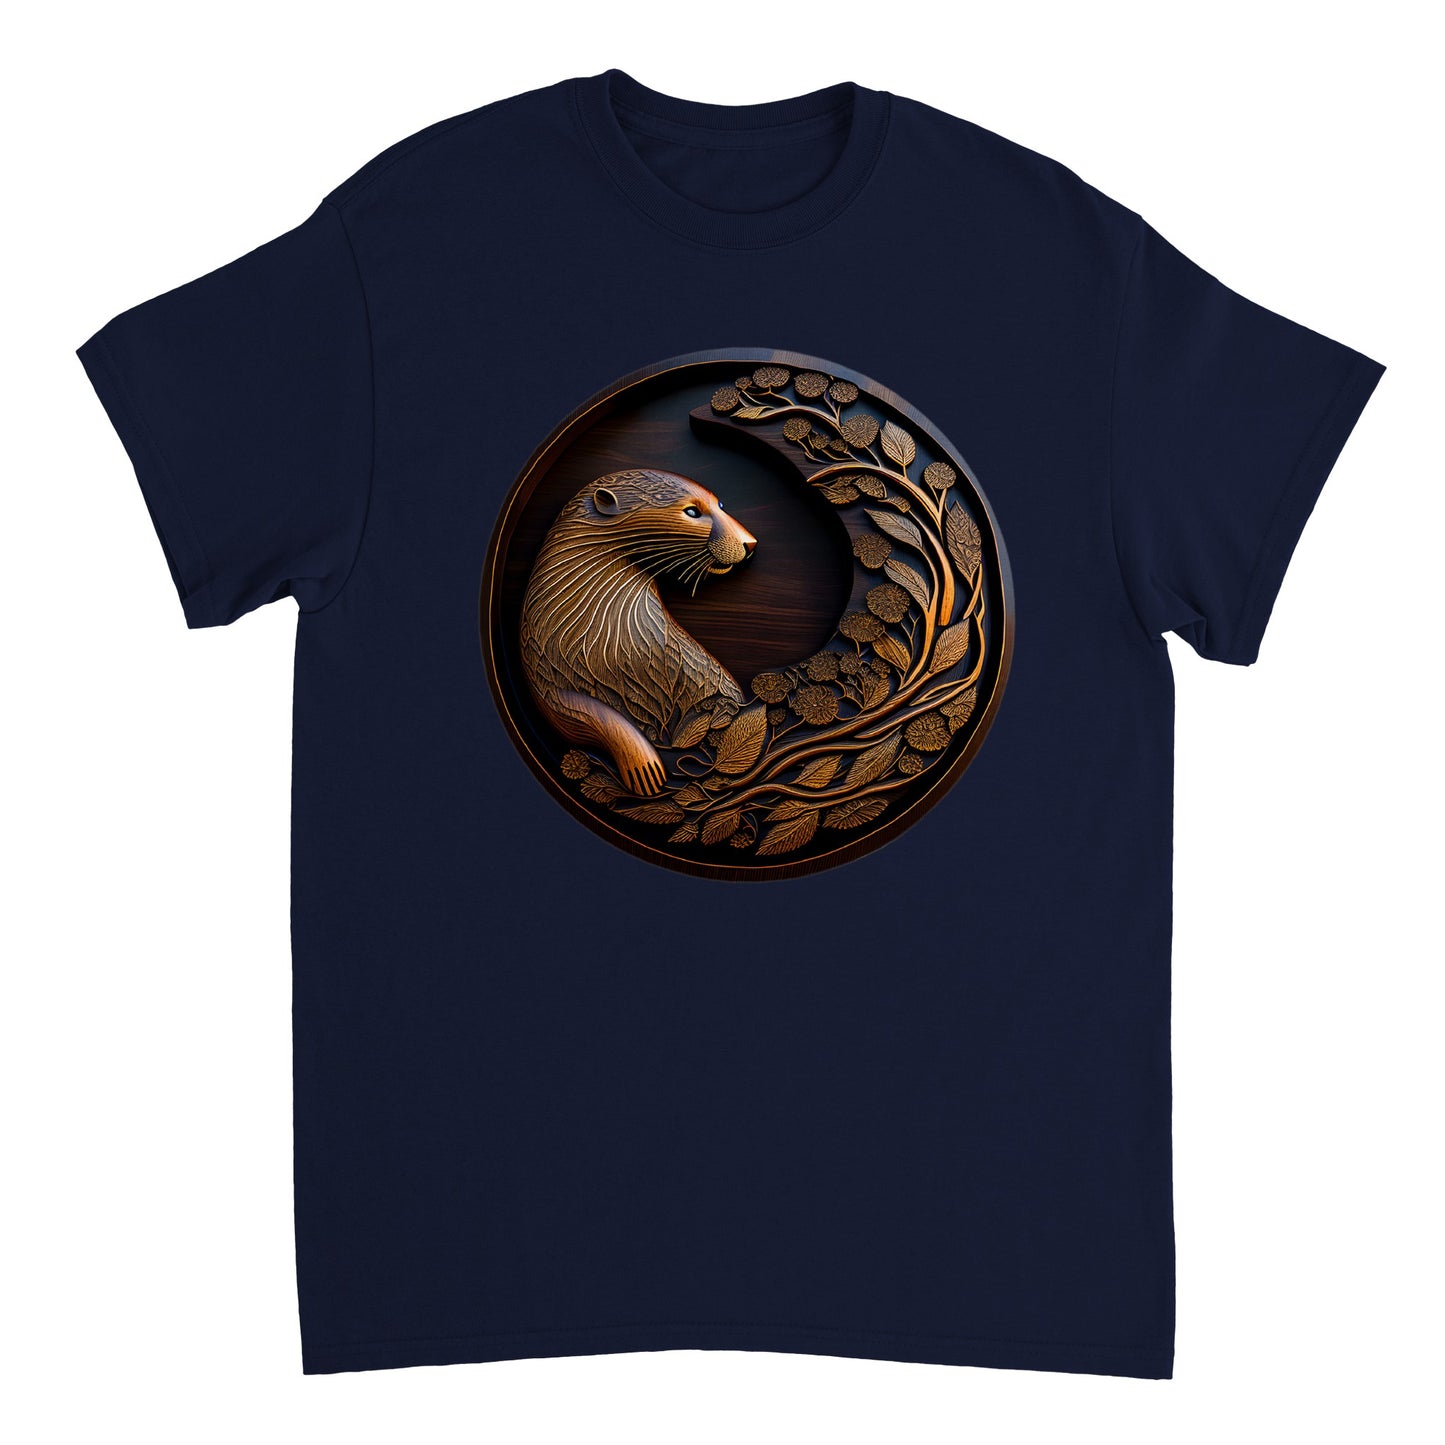 3D Wooden Animal Art - Heavyweight Unisex Crewneck T-shirt 29